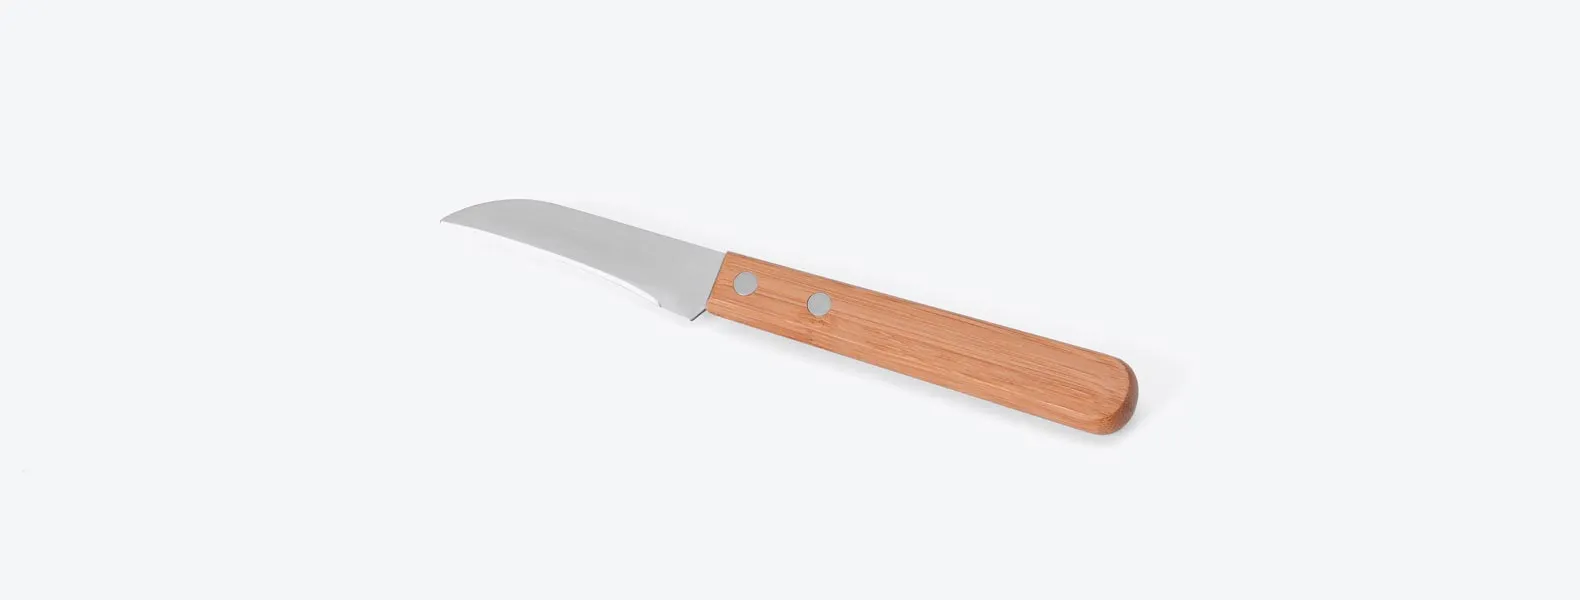 Conjunto de Facas em Bambu/Aço Inox; Acompanha faca 7'', faca 3 para legumes e garfo em Bambu/Inox. Como cortesia, na faca 7 fazemos uma gravação com os cortes do boi.